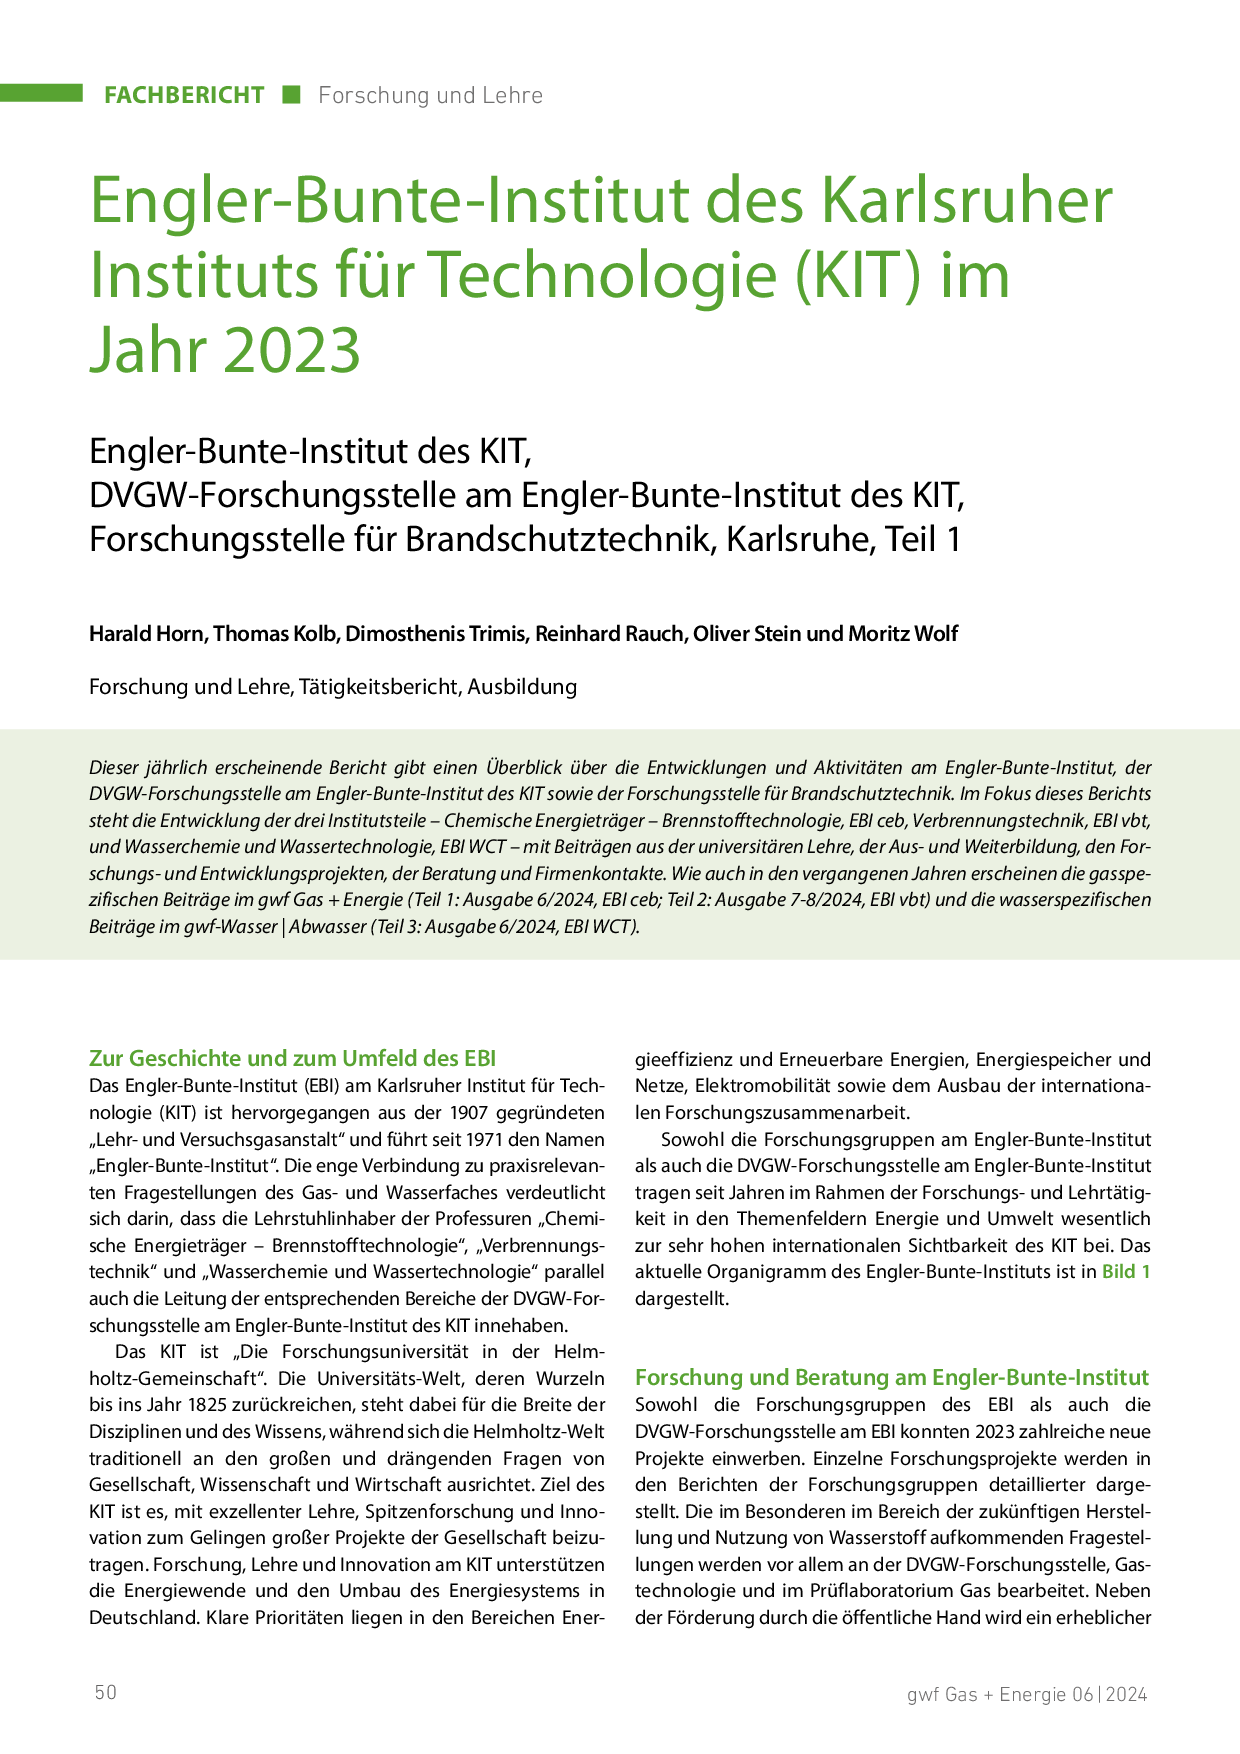 Engler-Bunte-Institut des Karlsruher Instituts für Technologie (KIT) im Jahr 2023